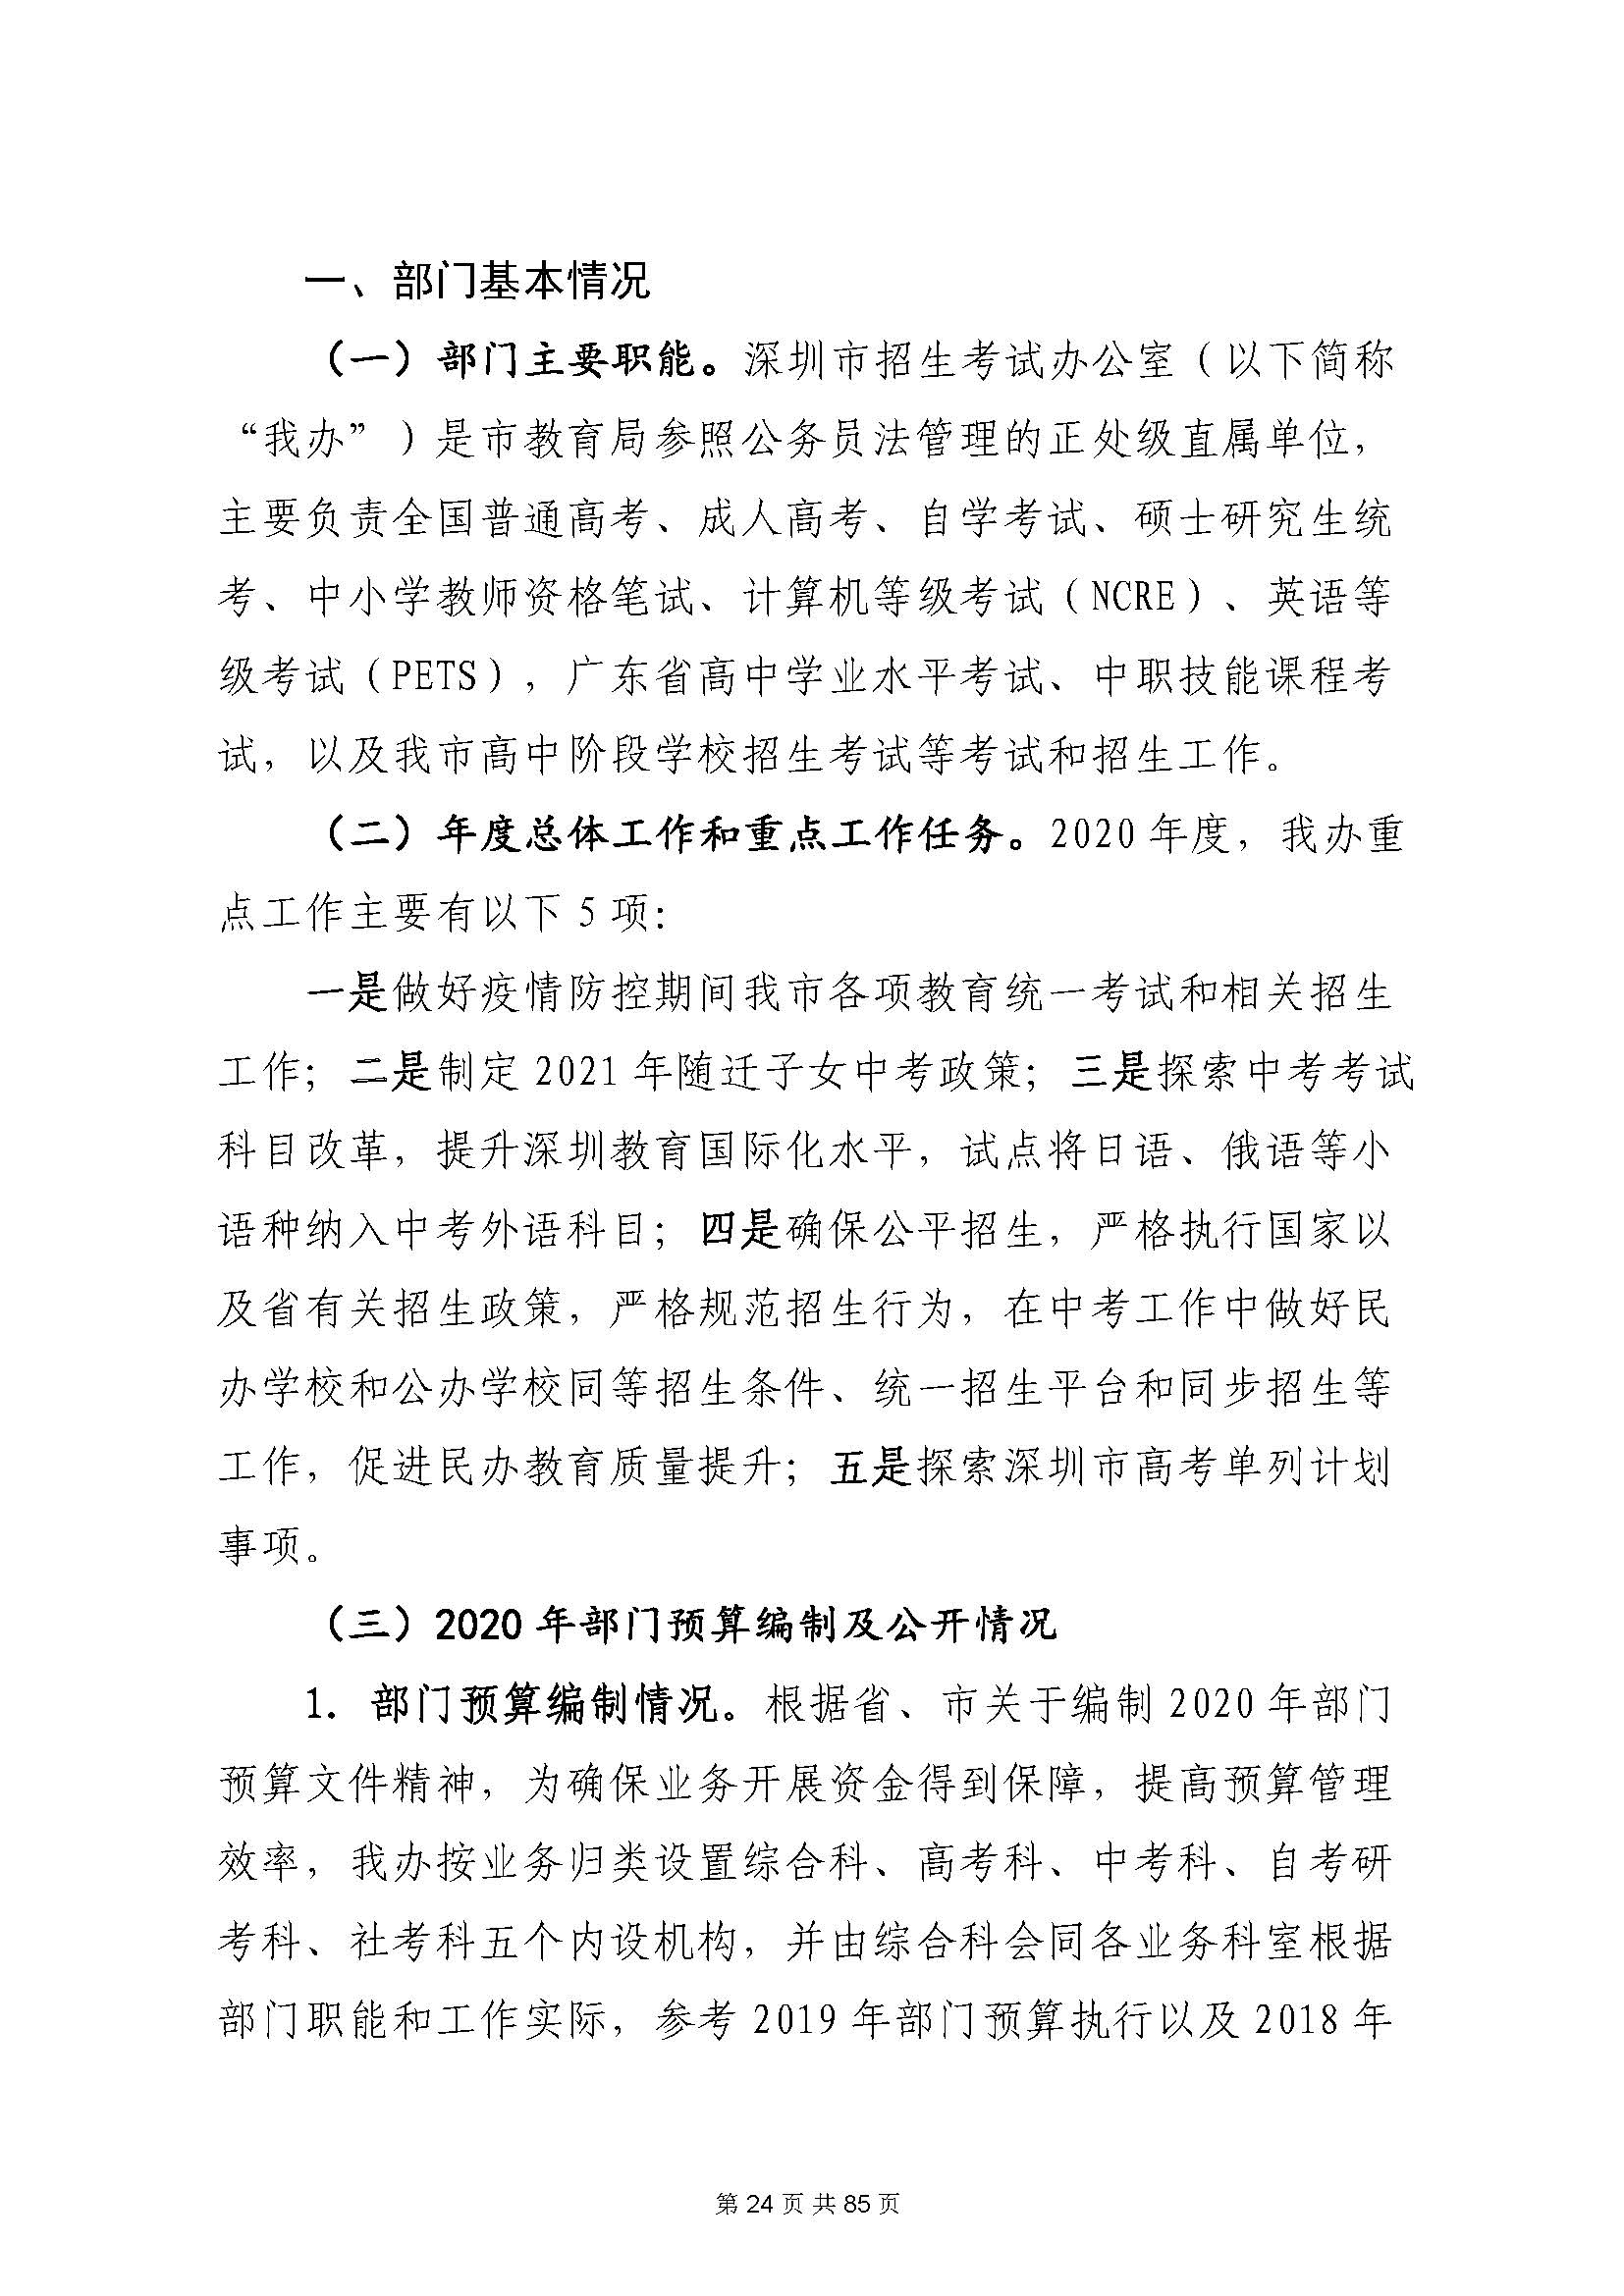 深圳市招生考试办公室2020年度部门决算_页面_25.jpg